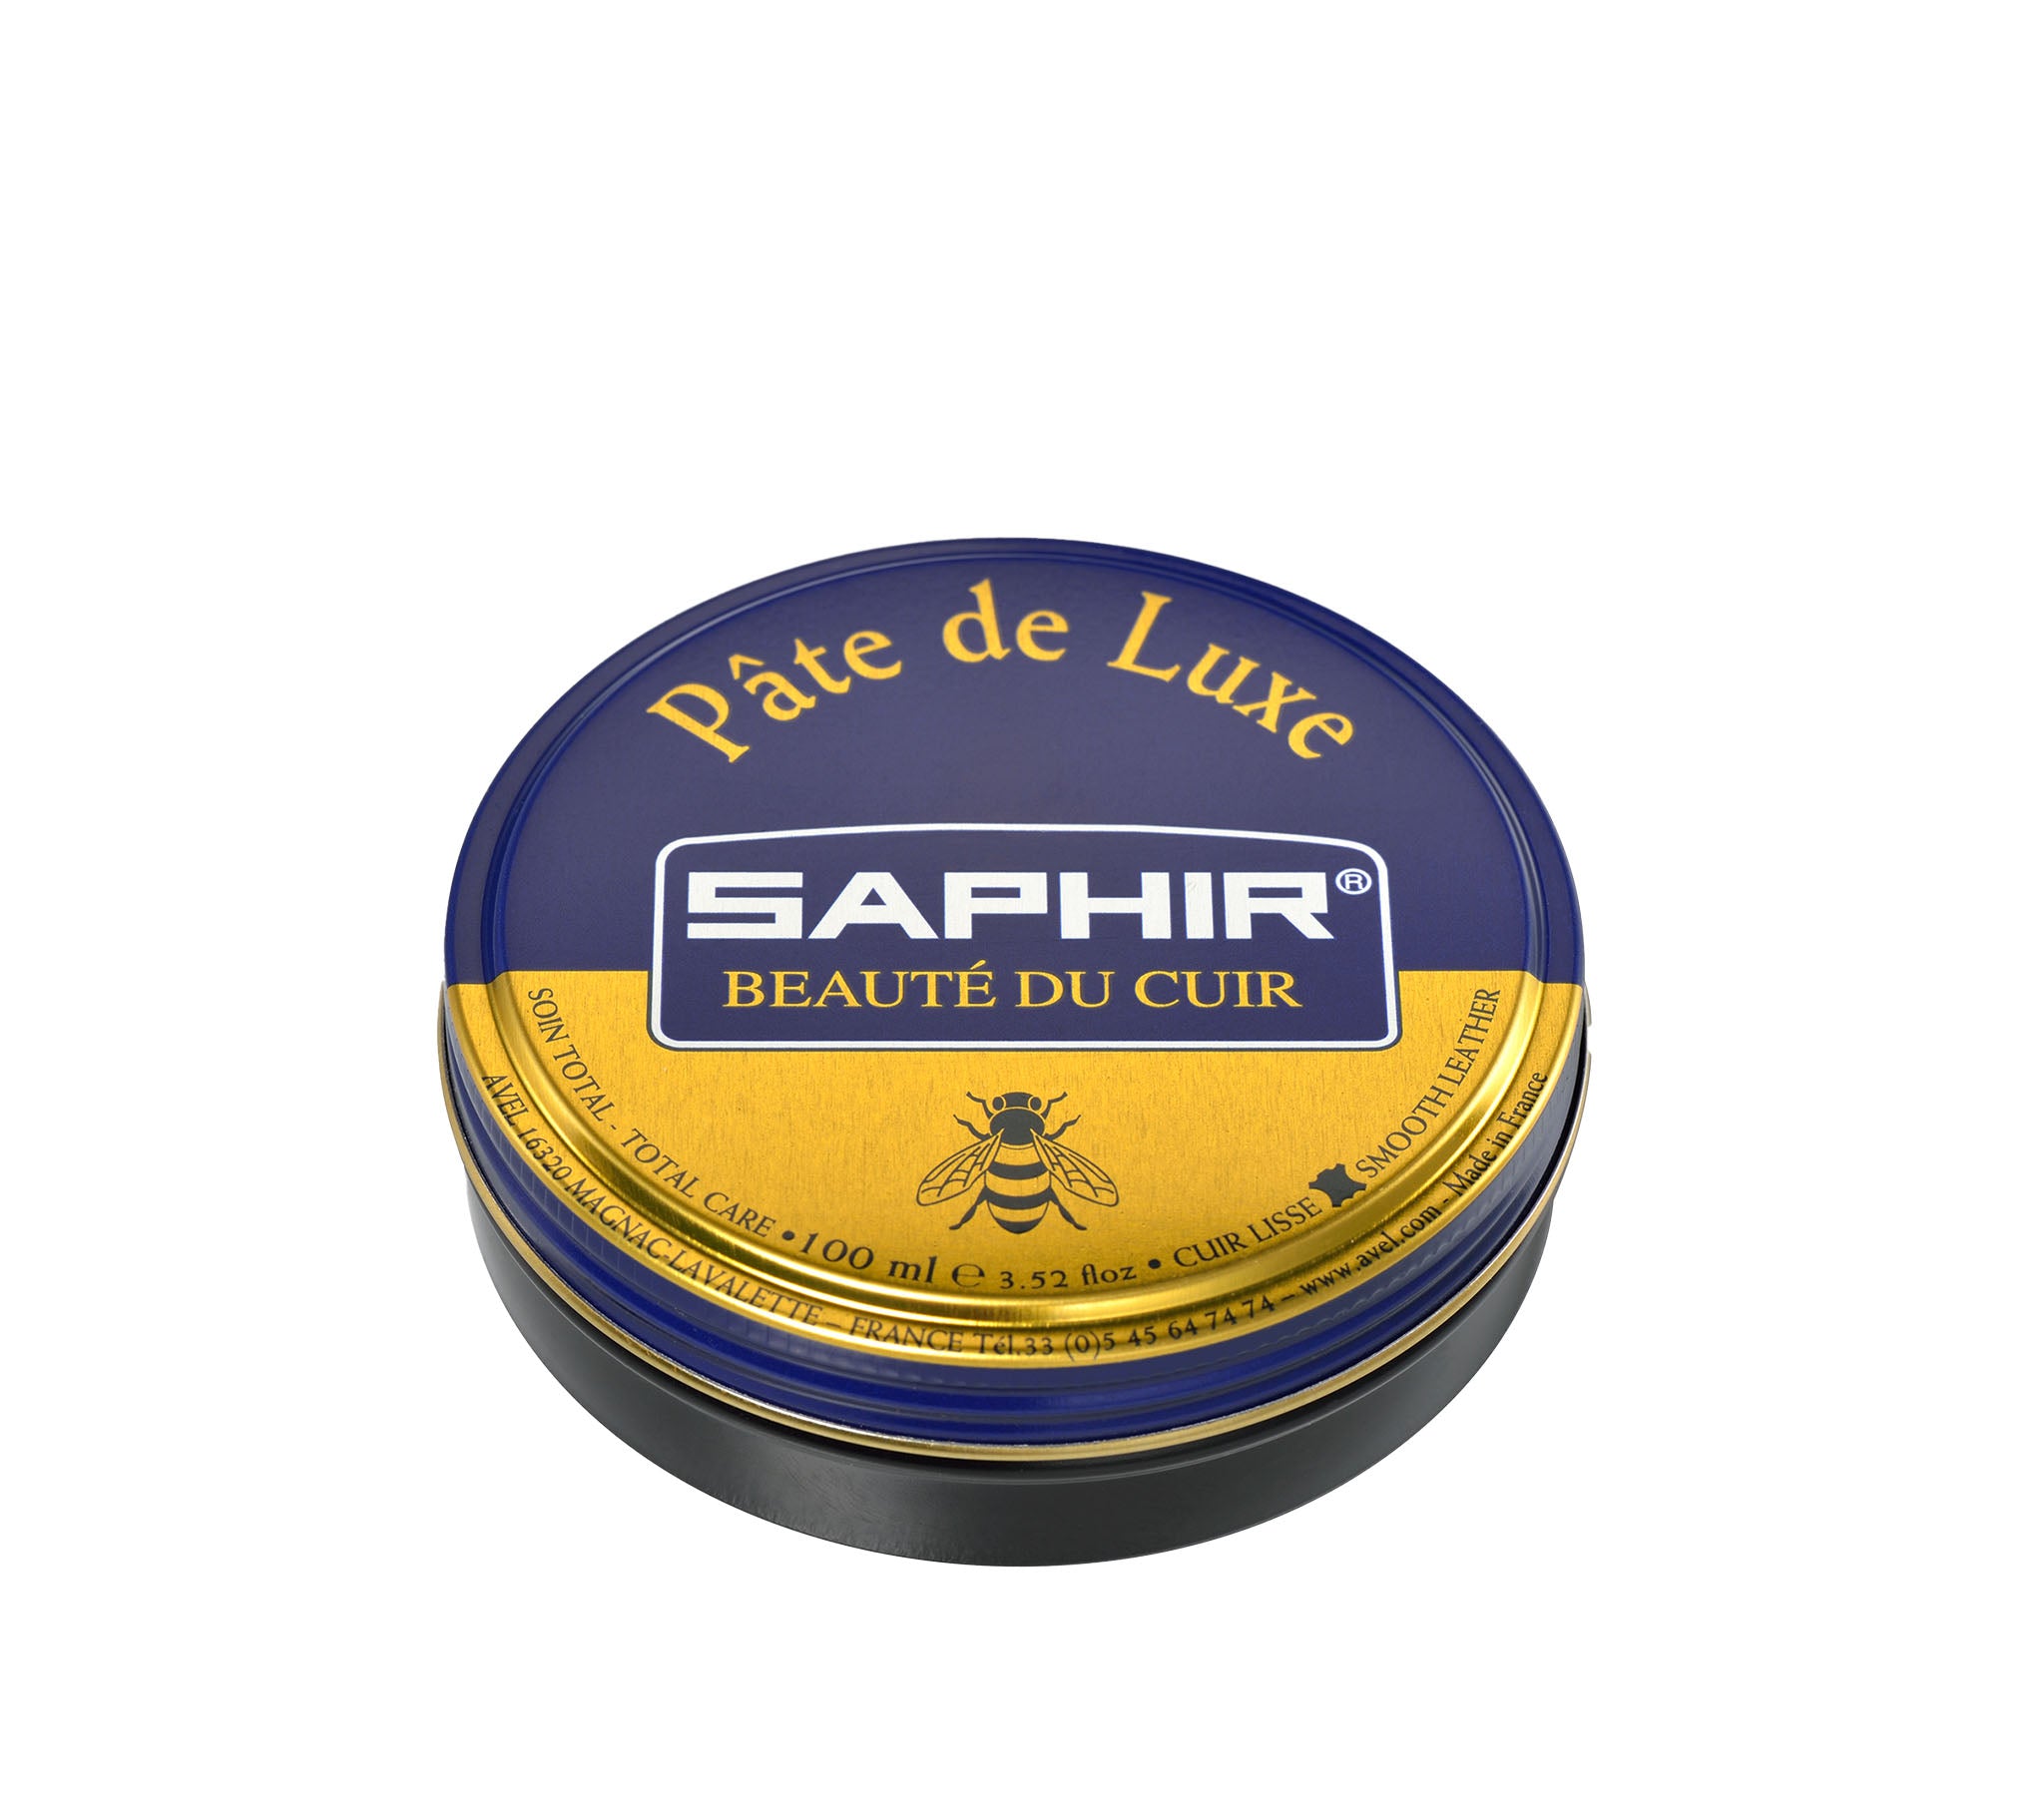 Saphir Beaute de Cuir Wax Polish 50 ml